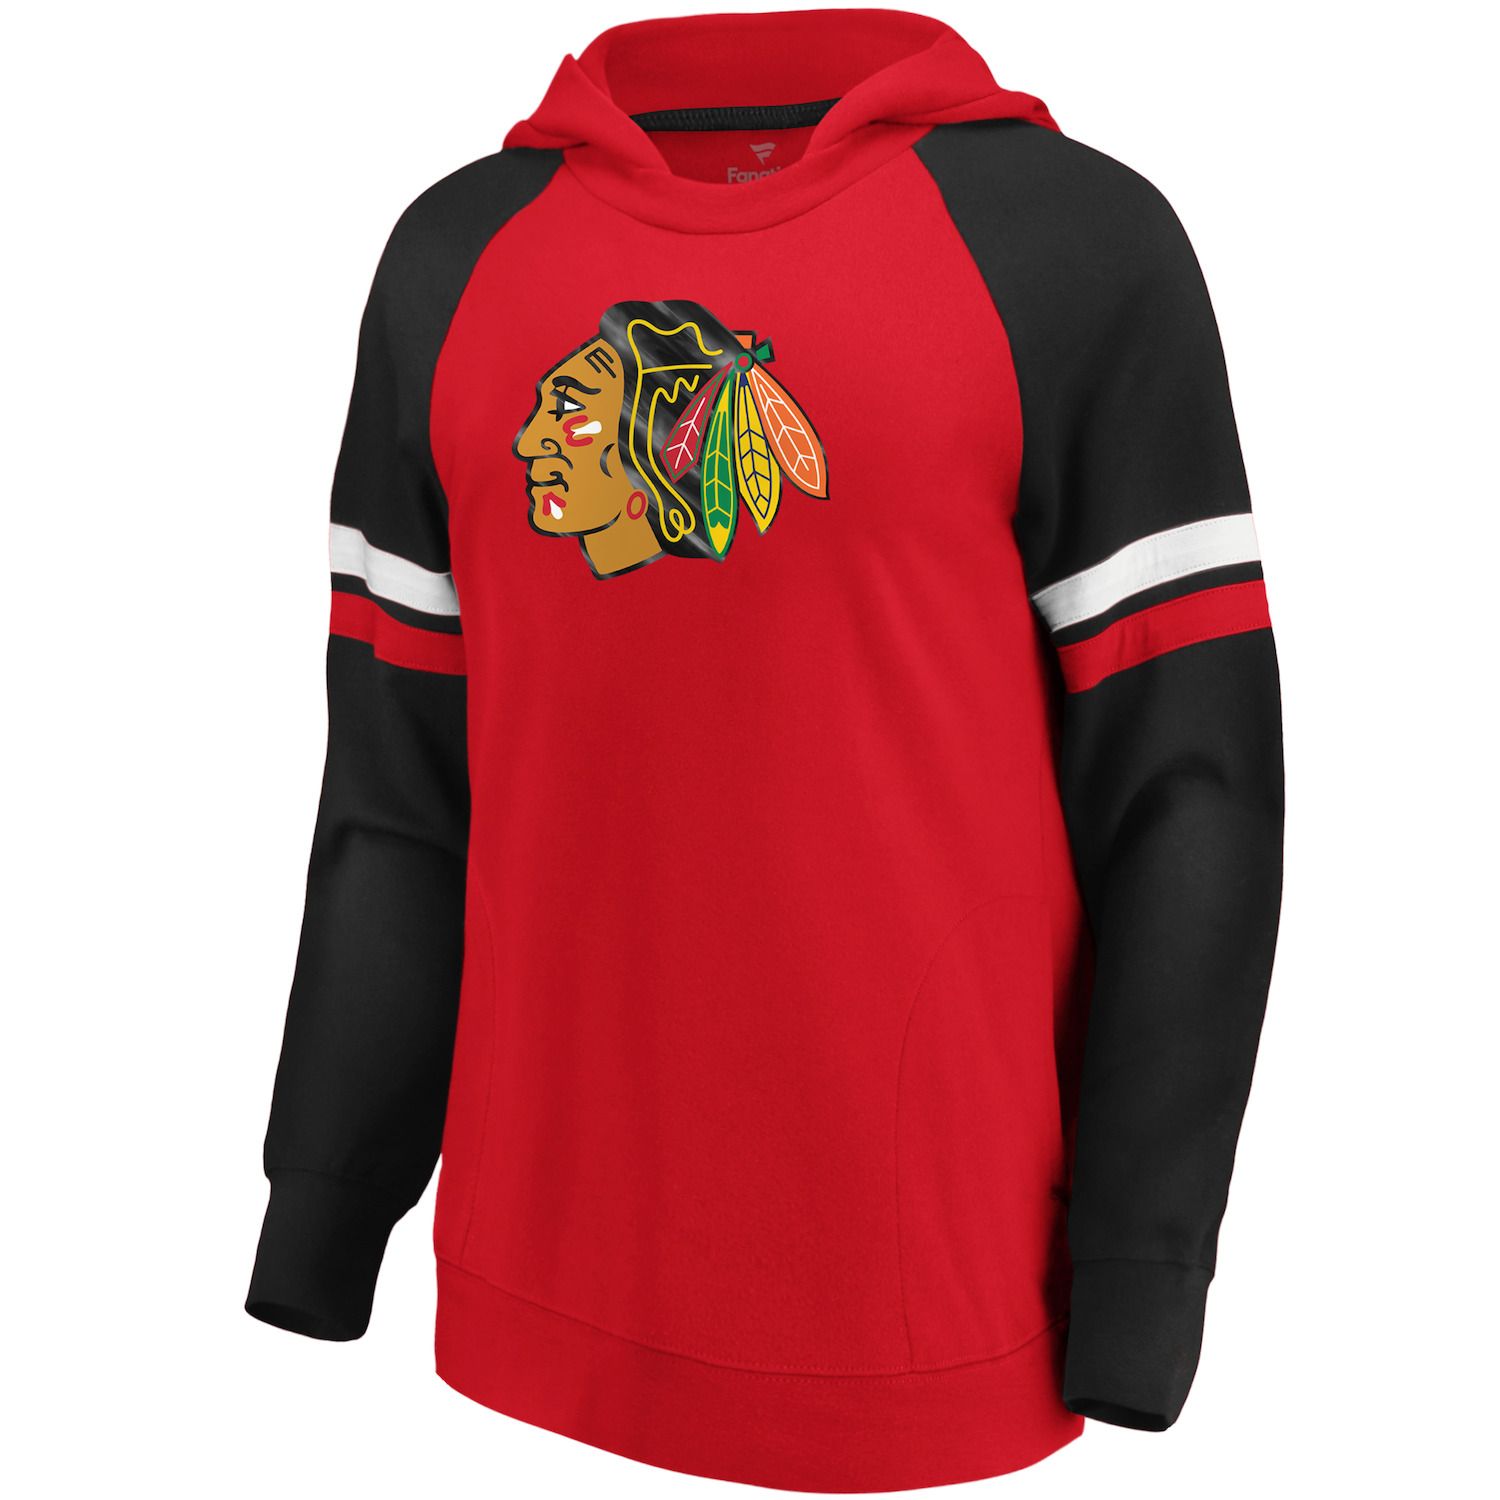 womens chicago blackhawks hoodie